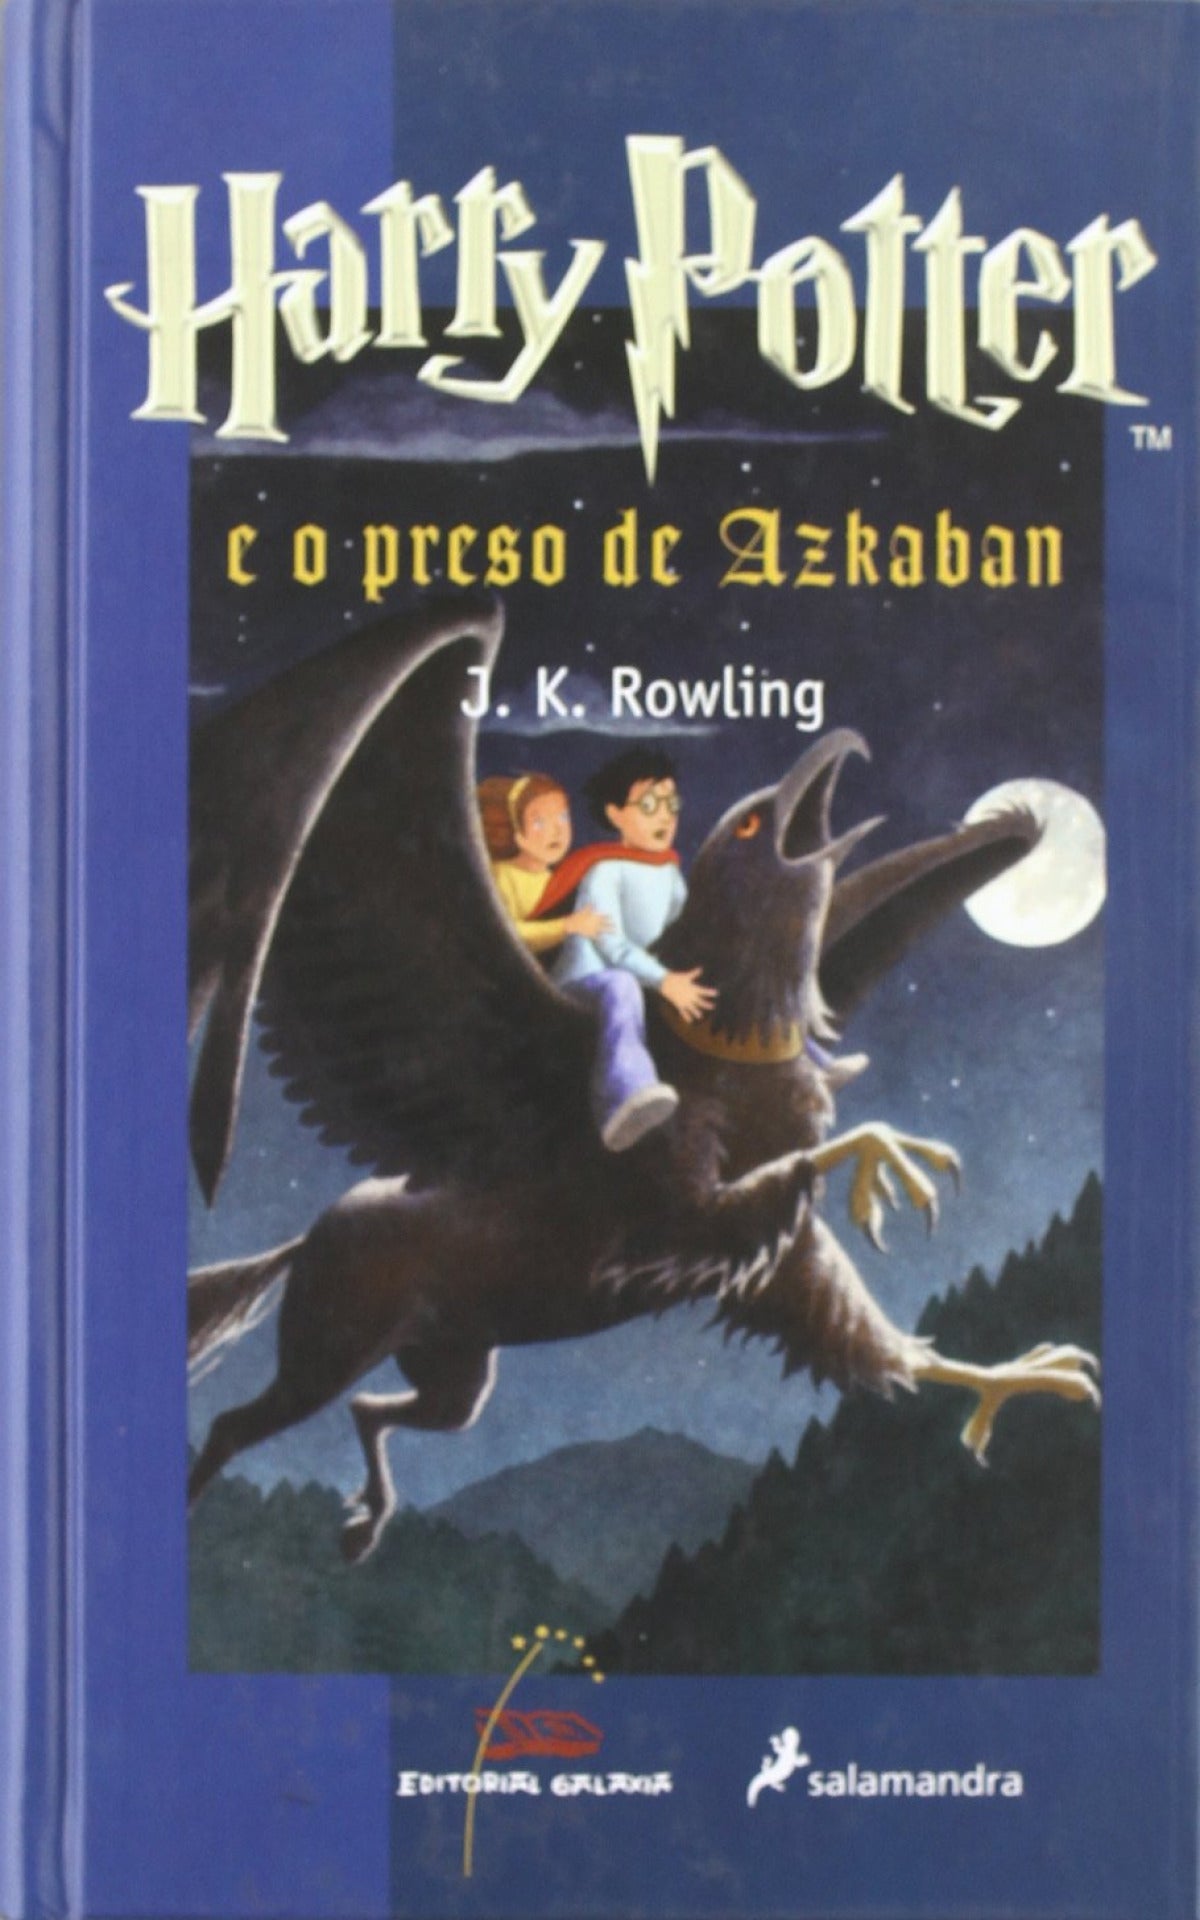  Harry Potter e o preso de Azkaban 